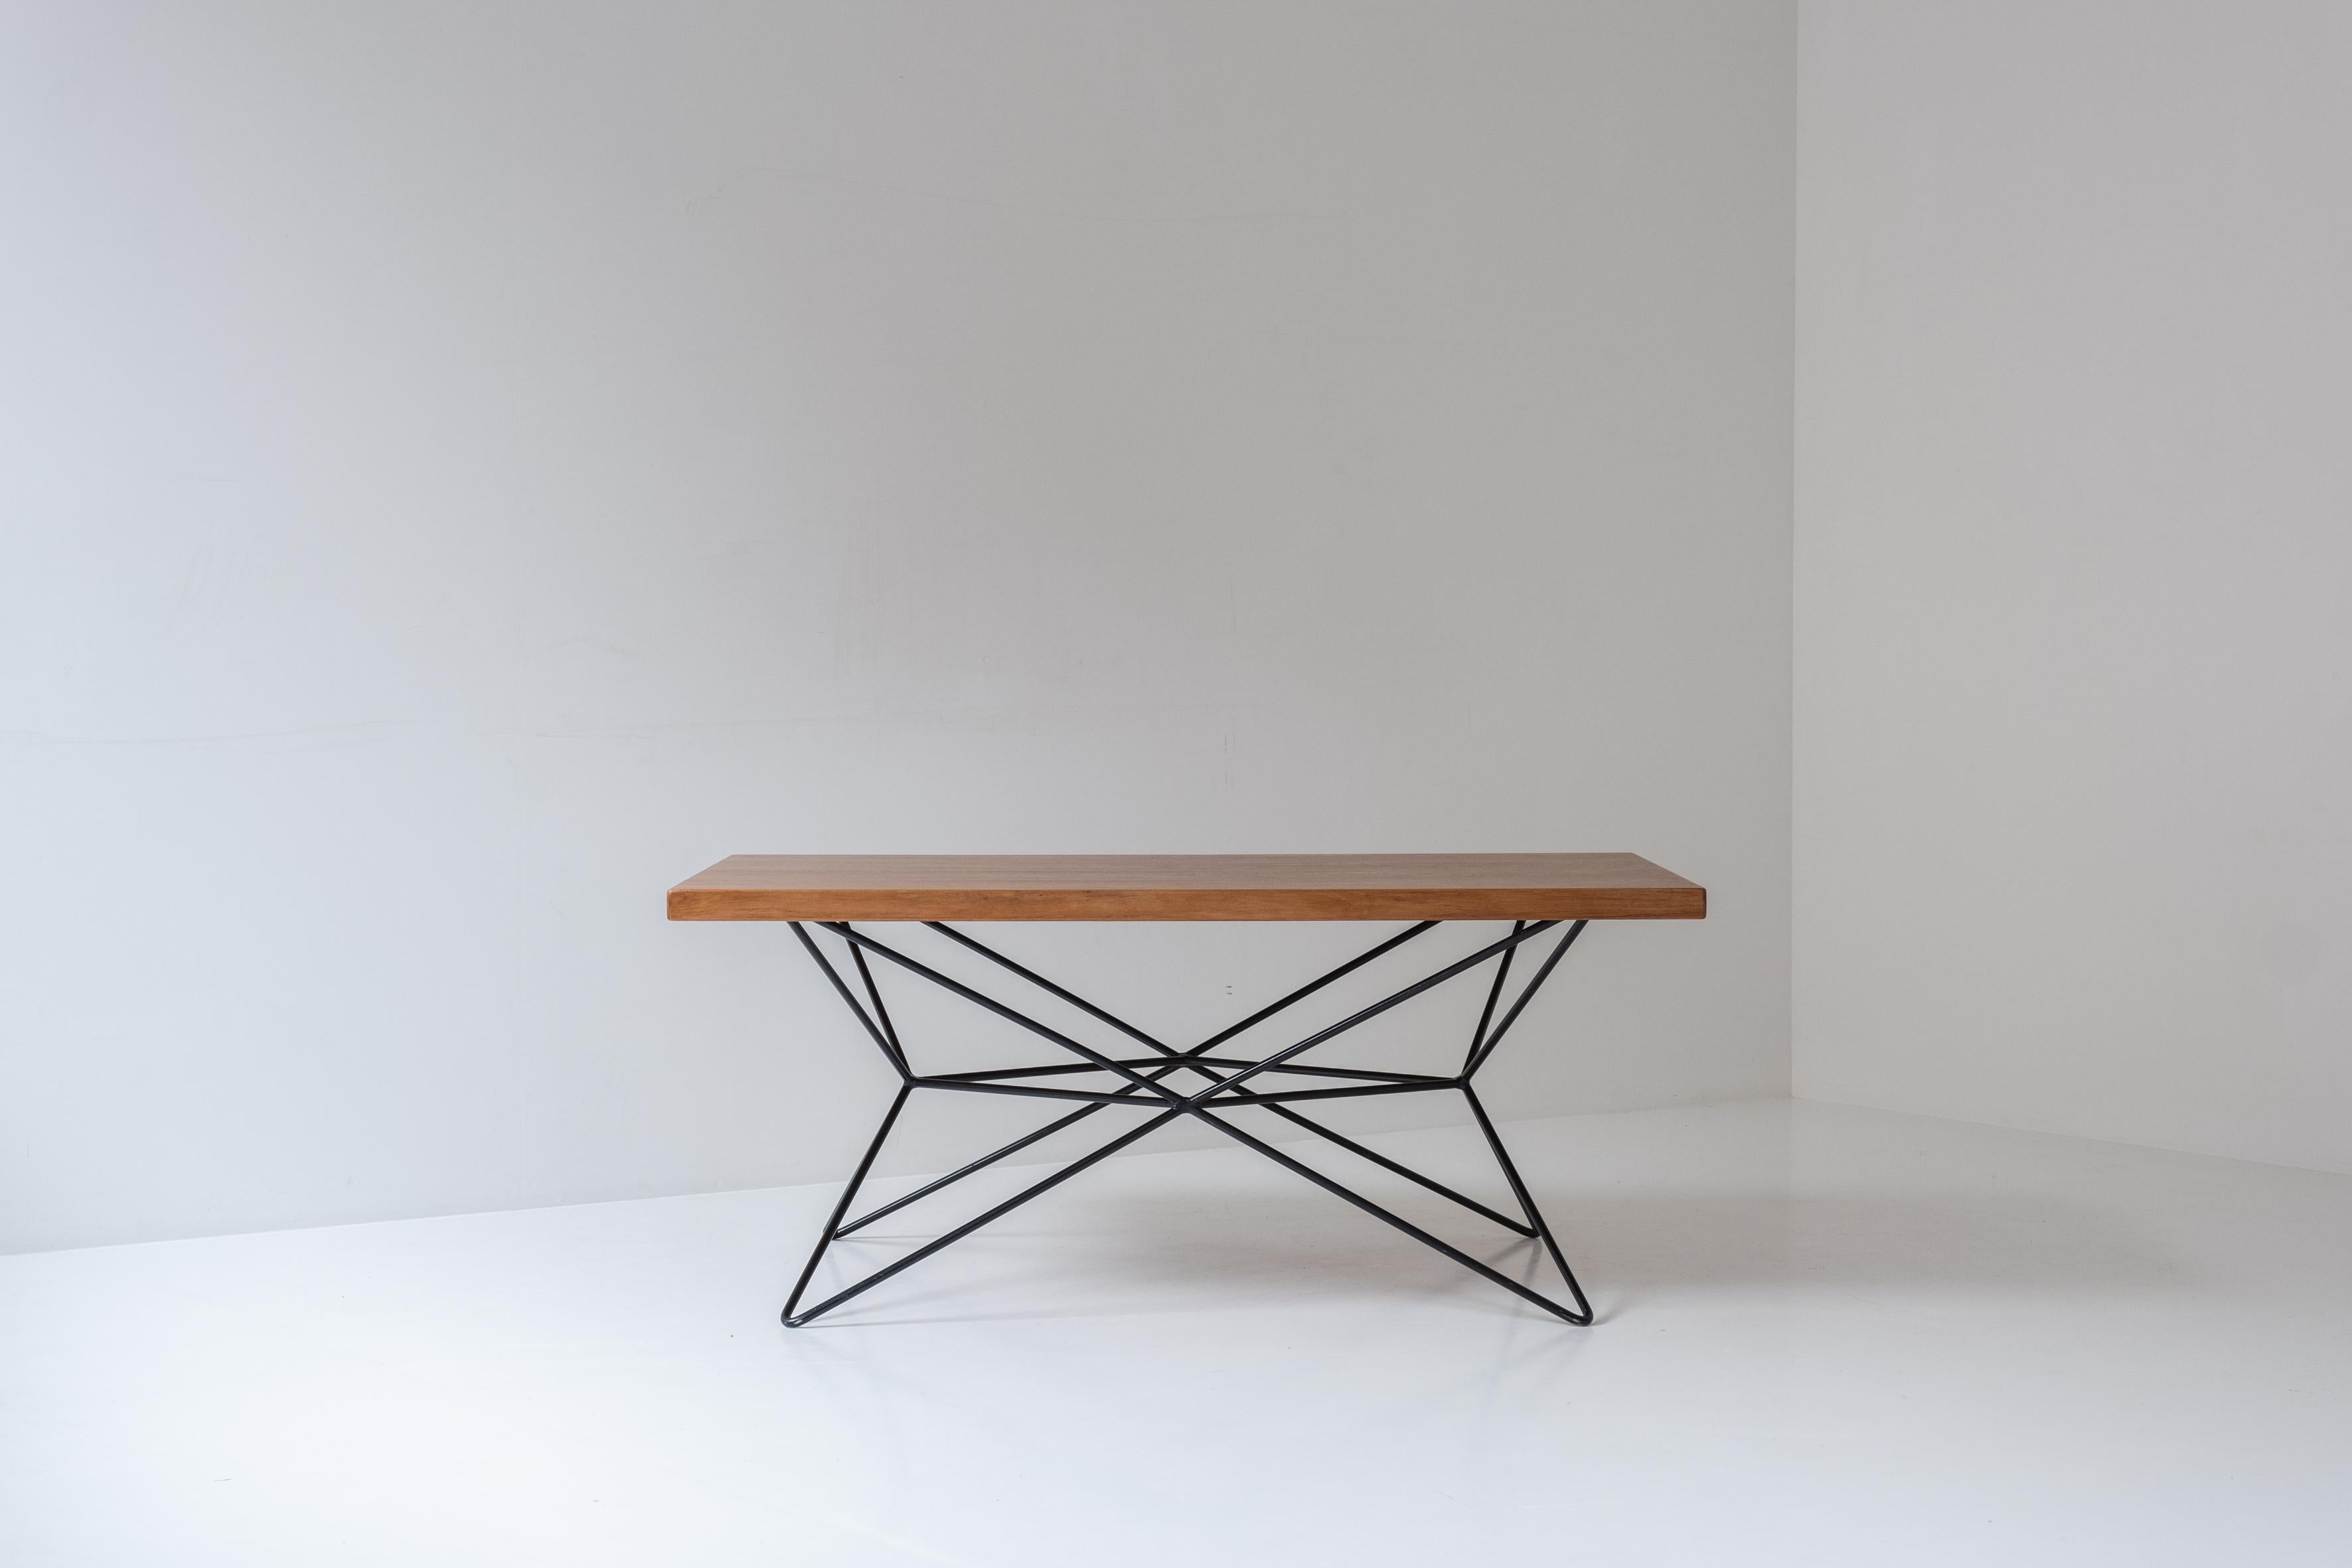 Seltener Multitisch von Bengt Johan Gullberg, entworfen und hergestellt in Schweden in den 1950er Jahren. Dieser Tisch hat ein schwarz lackiertes Stahlgestell und eine Platte aus Teakholz. Indem Sie das Untergestell in verschiedene Positionen